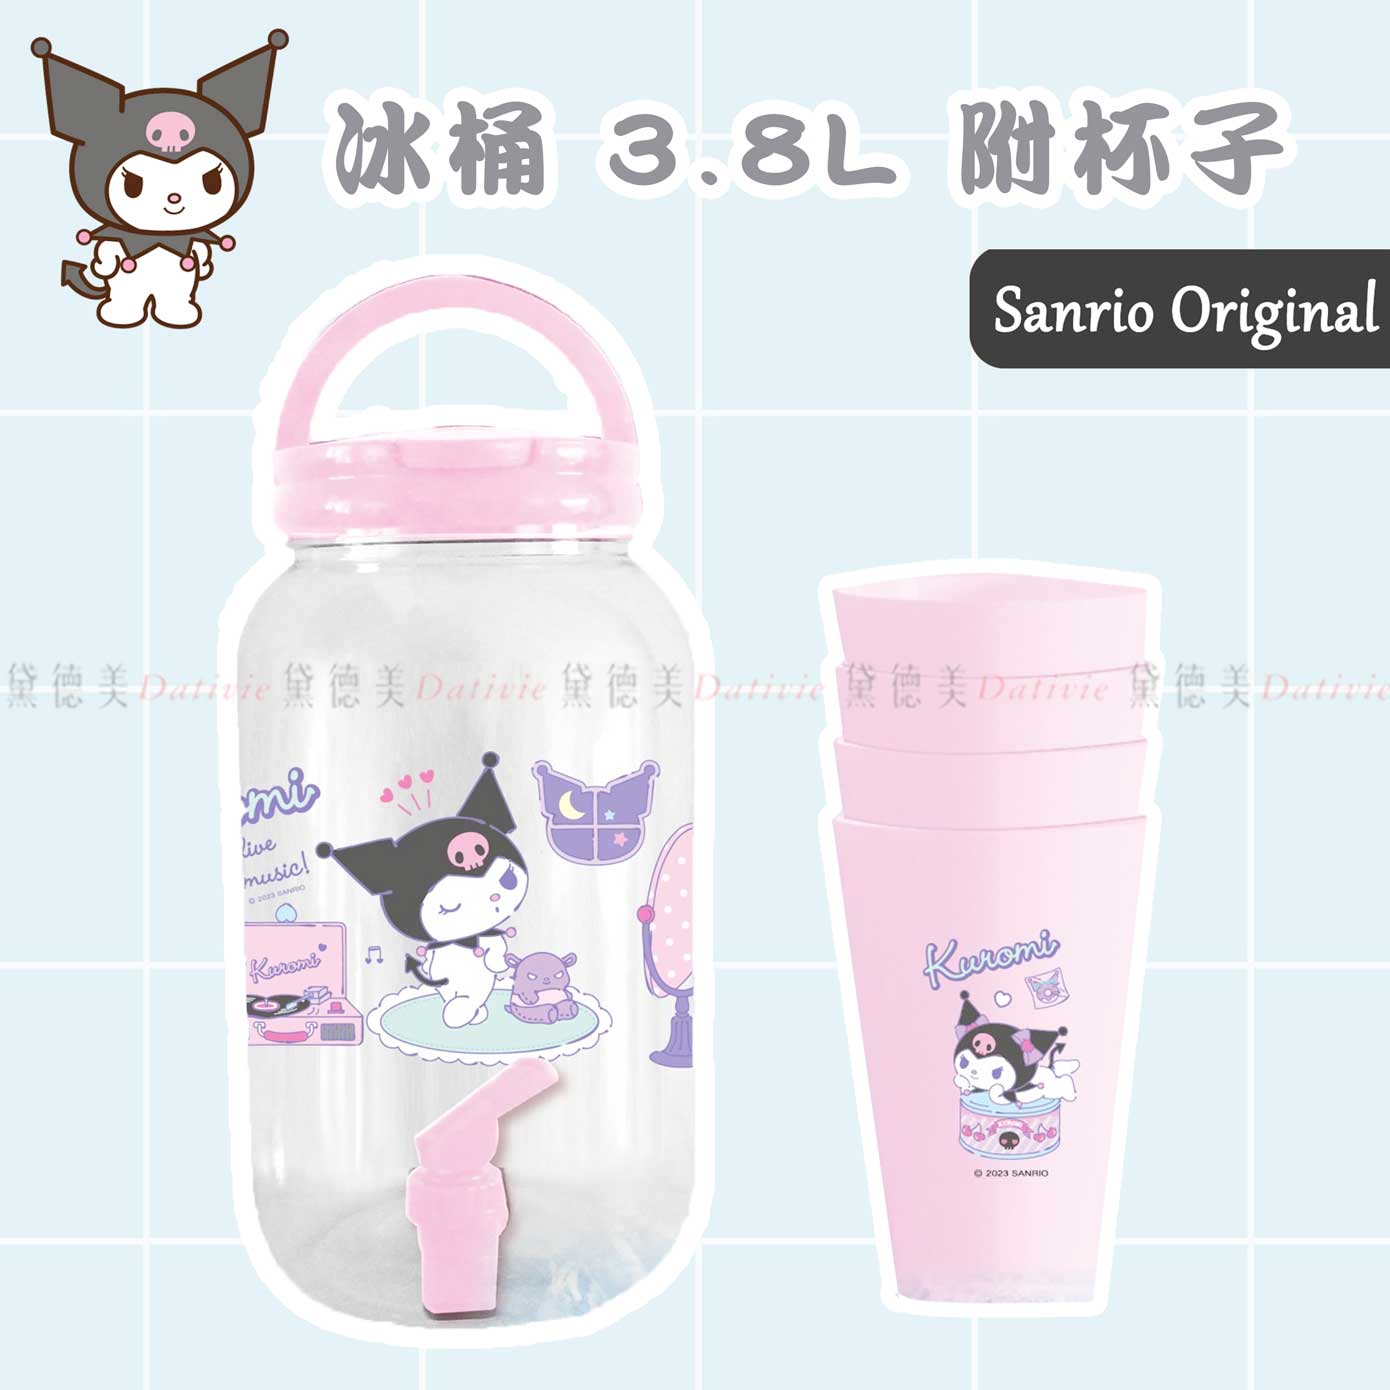 冰桶 3.8L 附杯子-酷洛米 KUROMI 三麗鷗 Sanrio 正版授權